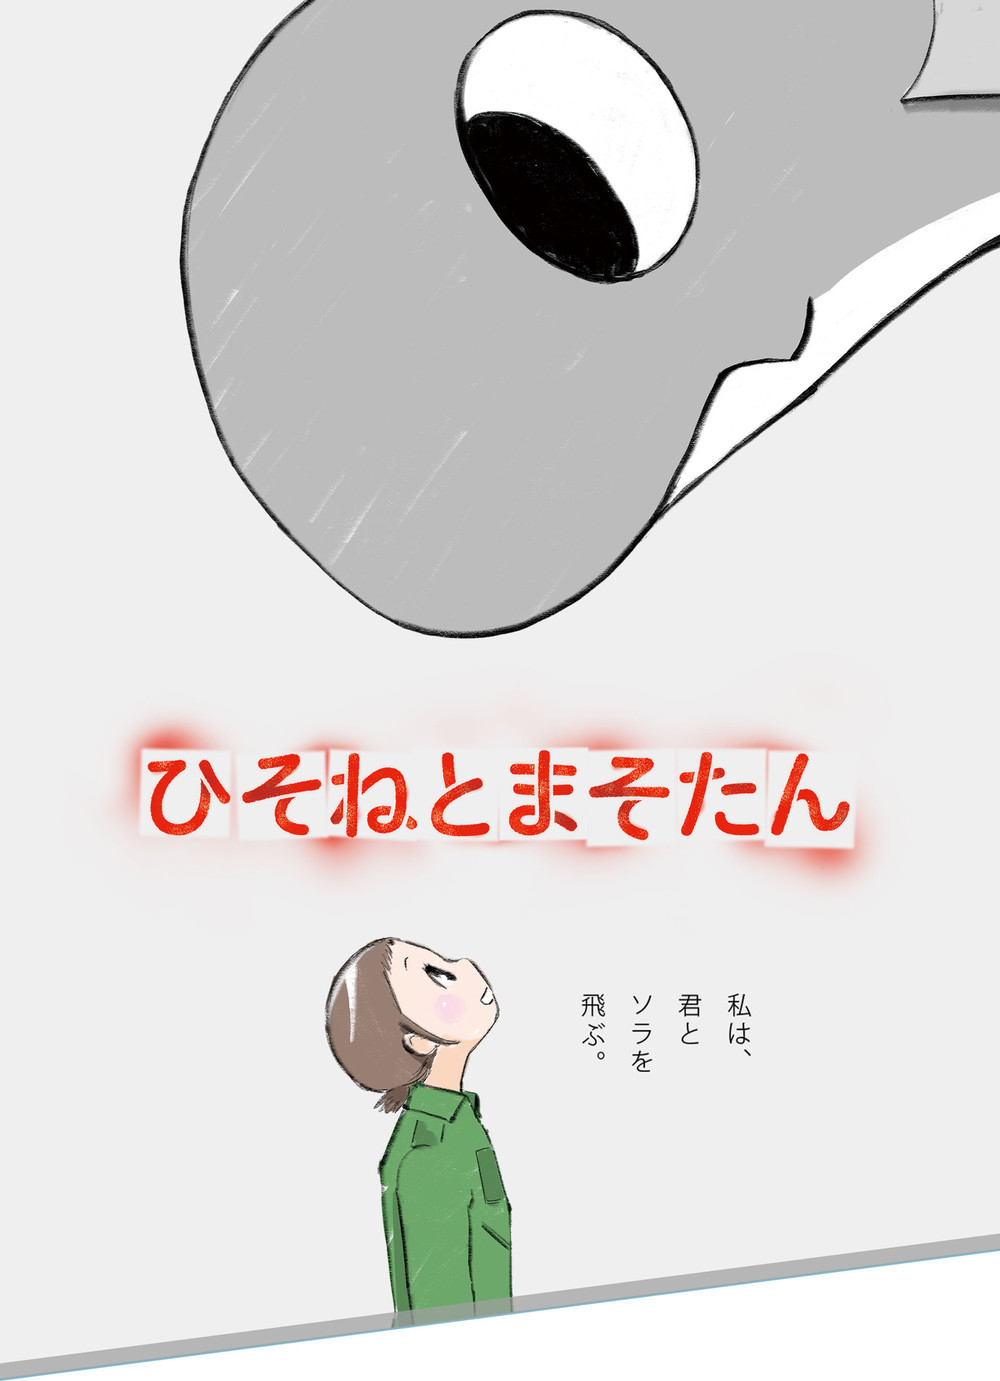 Moderne drage TV anime "Hisone til Masotan" i produktion